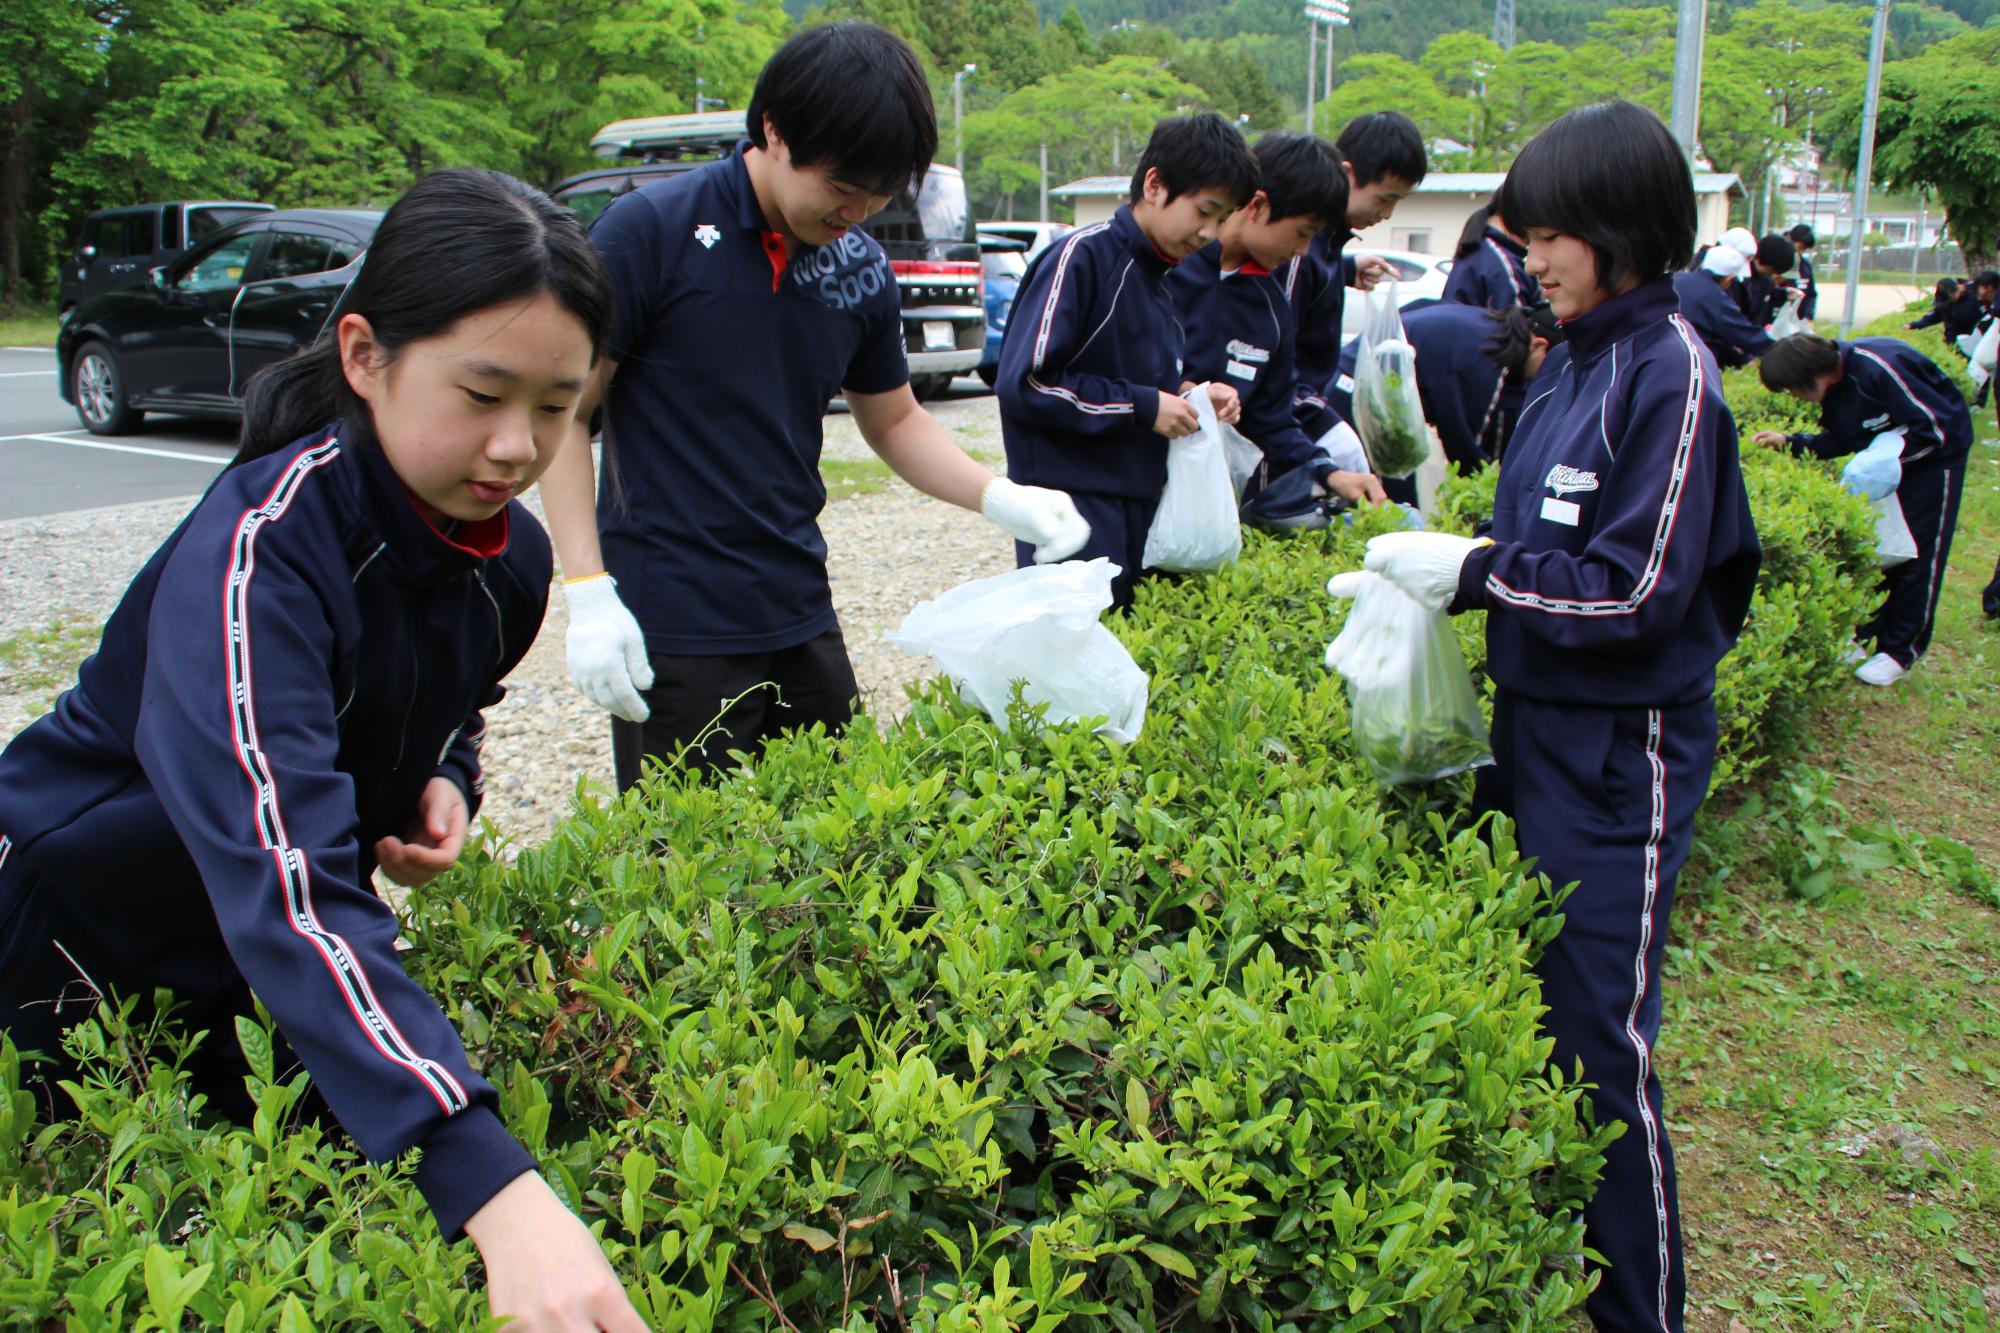 紺色のジャージを着た中学生たちが茶葉を摘み取っている写真